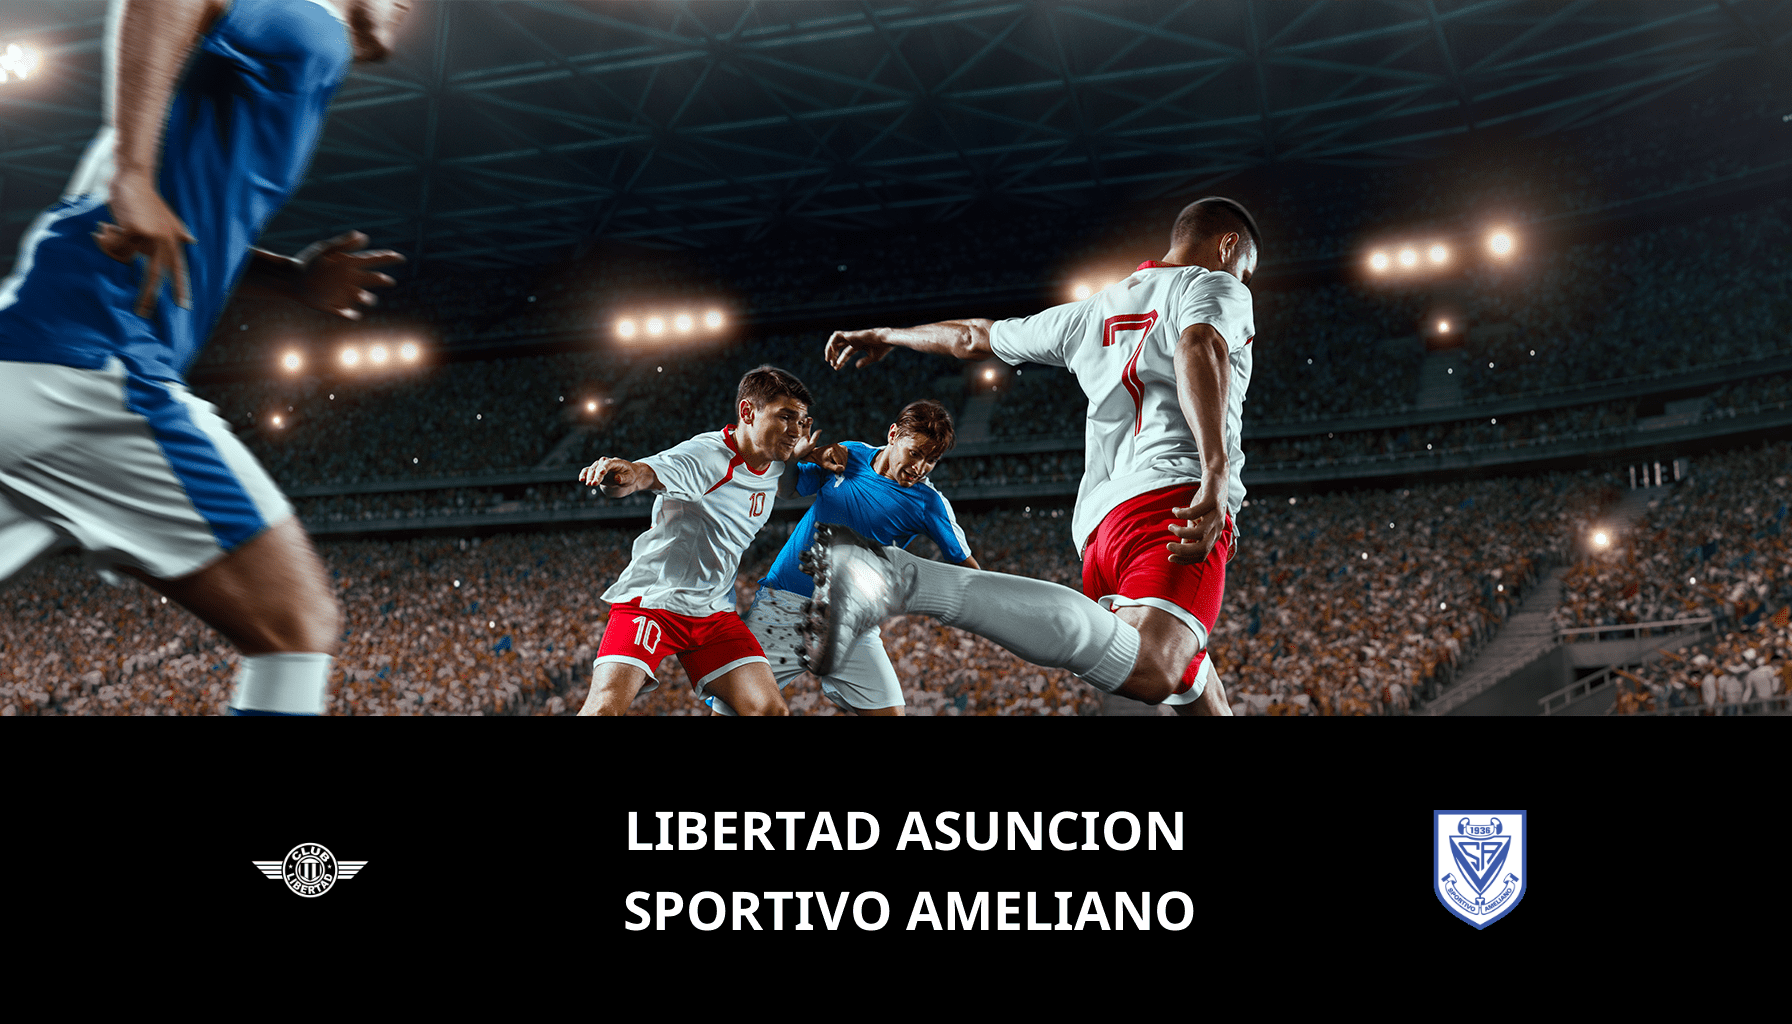 Previsione per Libertad Asuncion VS Sportivo Ameliano il 11/03/2024 Analysis of the match